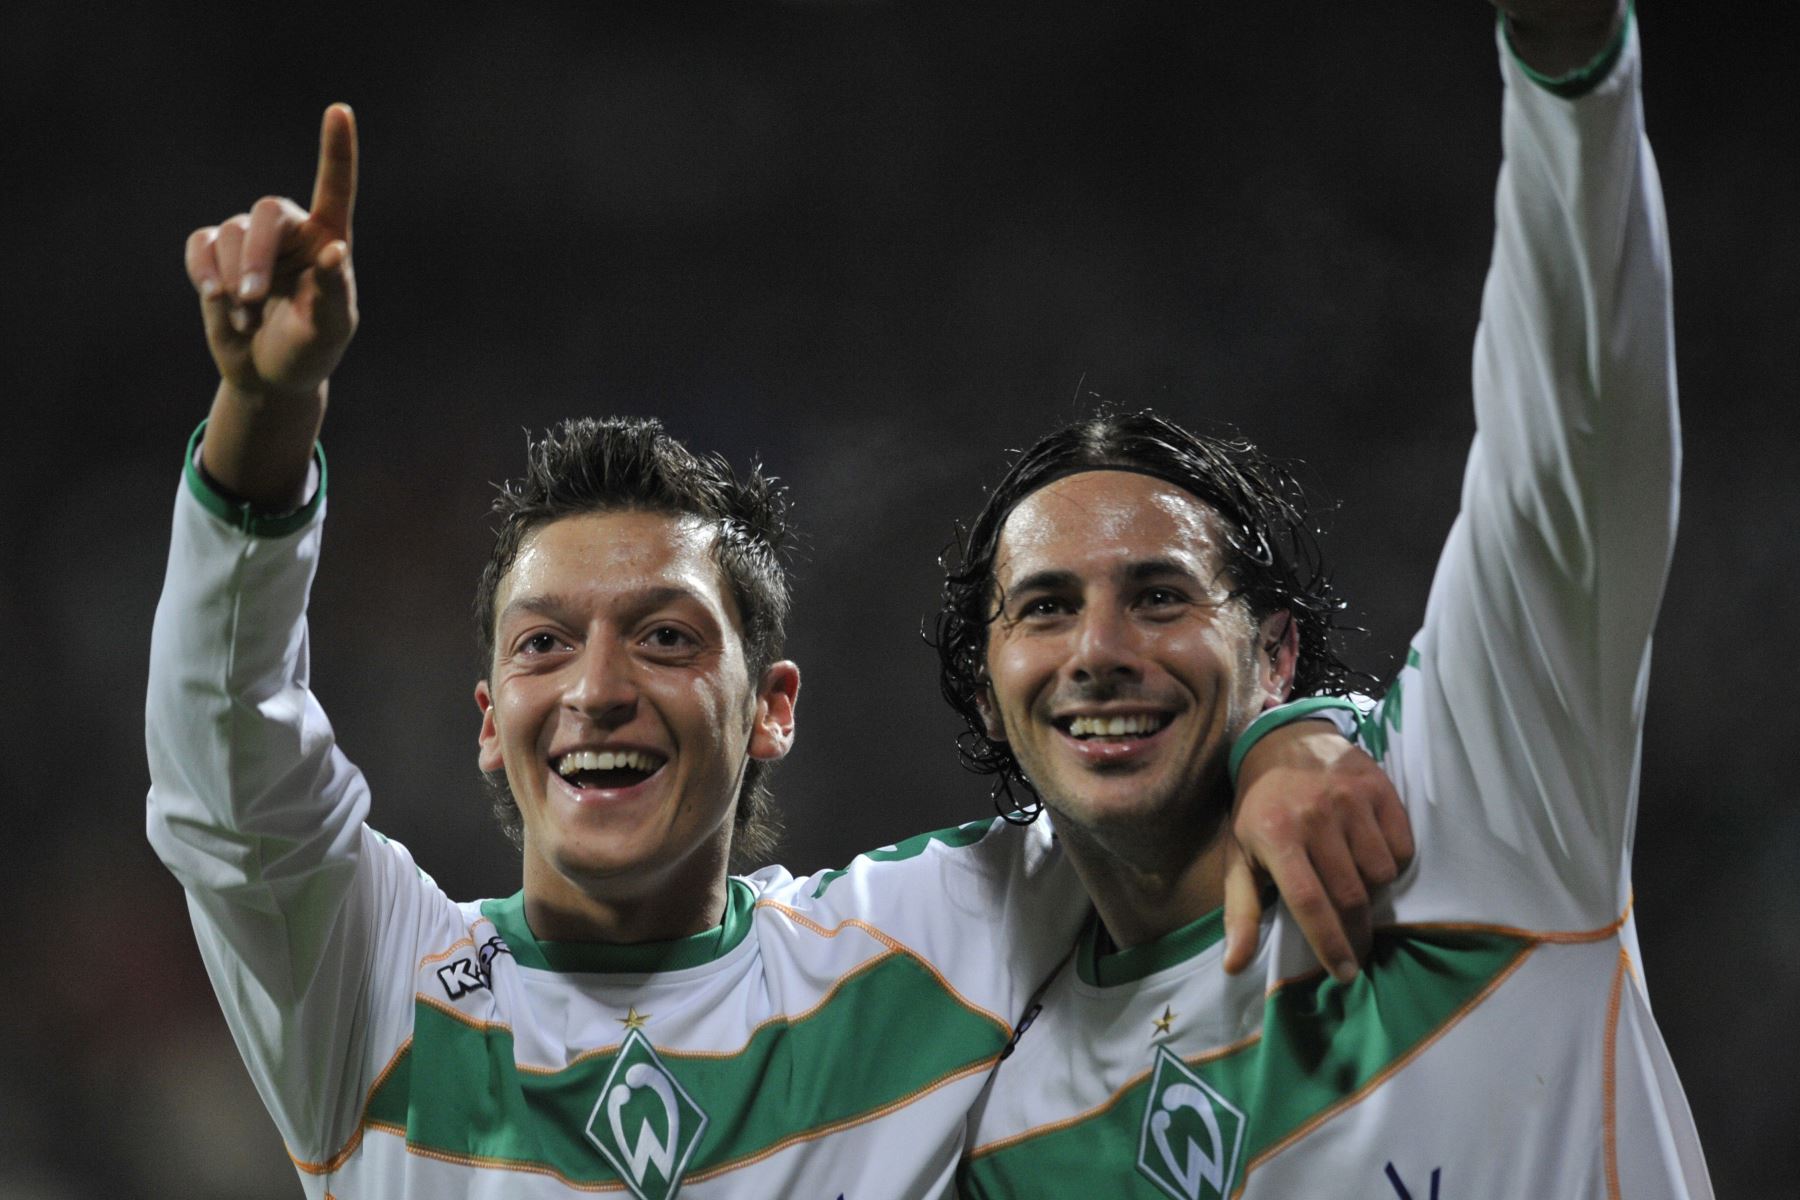 El mediocampista de Werder Bremen, Mesut Ozil (L), y el delantero peruano de Werder Bremen, Claudio Pizarro, celebran después de anotar durante el partido de fútbol Werder Bremen (Alemania) vs Inter Milán (Italia) de la Liga de Campeones B en Bremen el 9 de diciembre de 2008. 
Foto:AFP